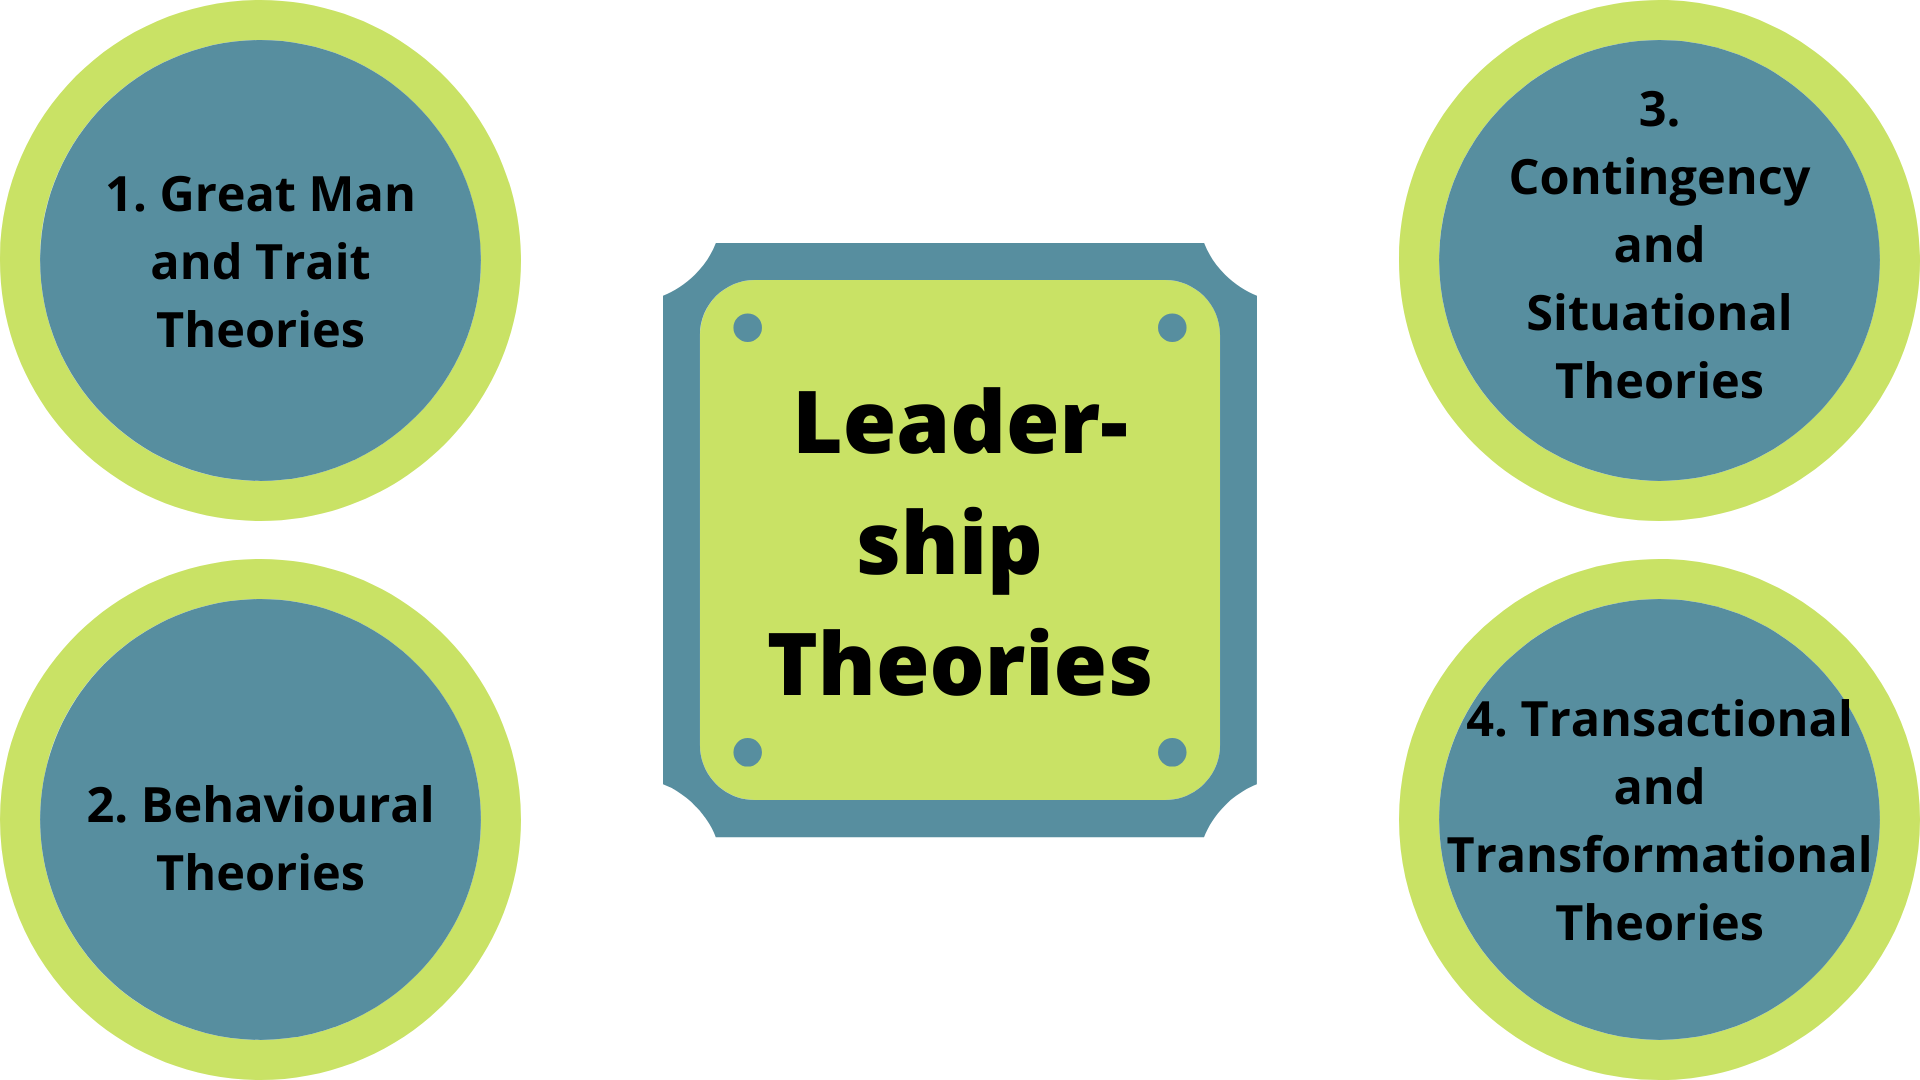 leadership theories thesis